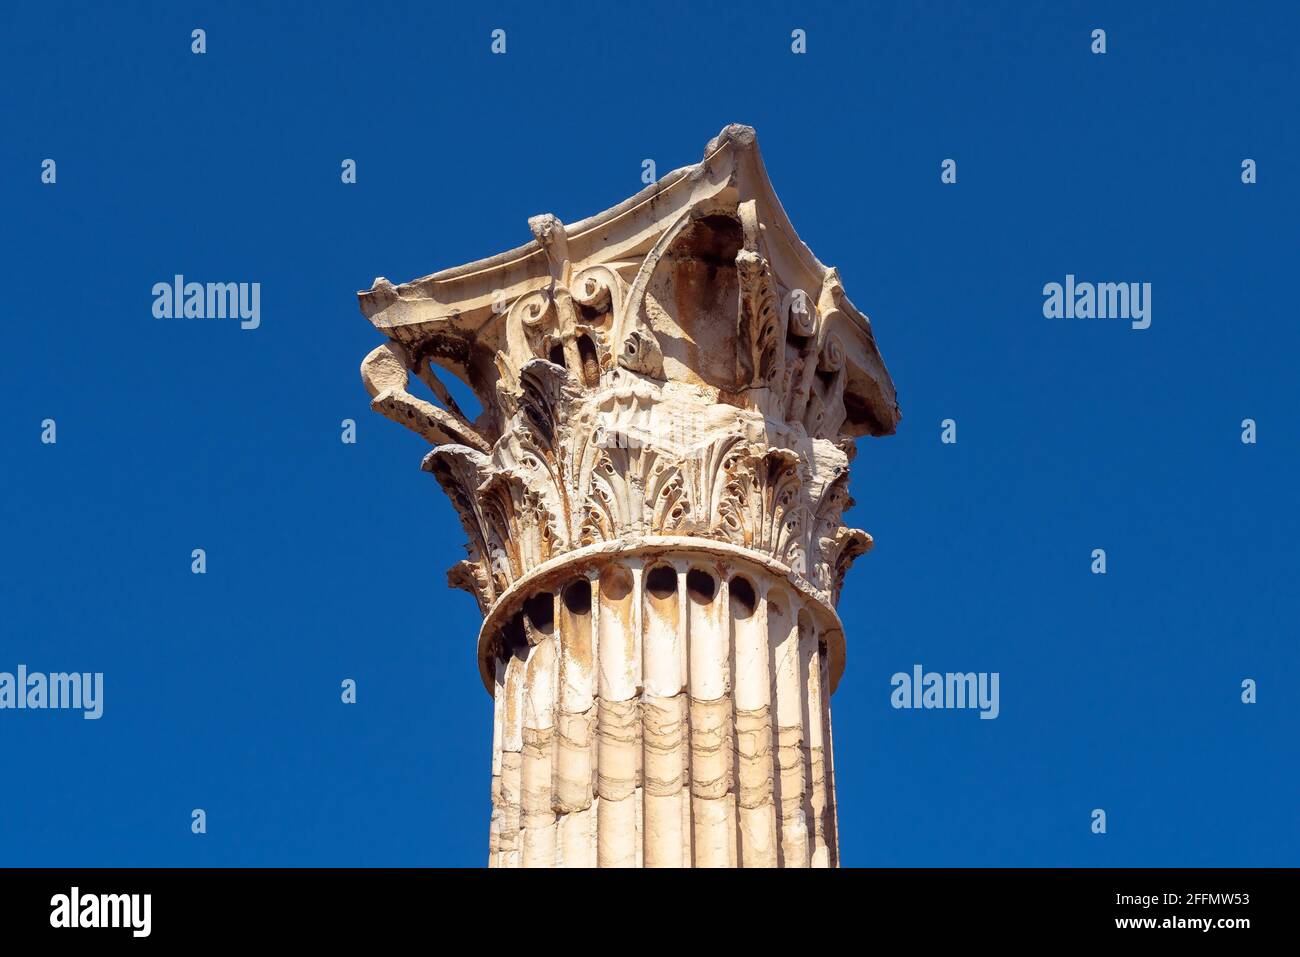 Colonne corinzie del Tempio di Zeus Olimpio da vicino su sfondo blu cielo, Atene, Grecia. Dettaglio architettonico dell'antico edificio greco. Concetto Foto Stock